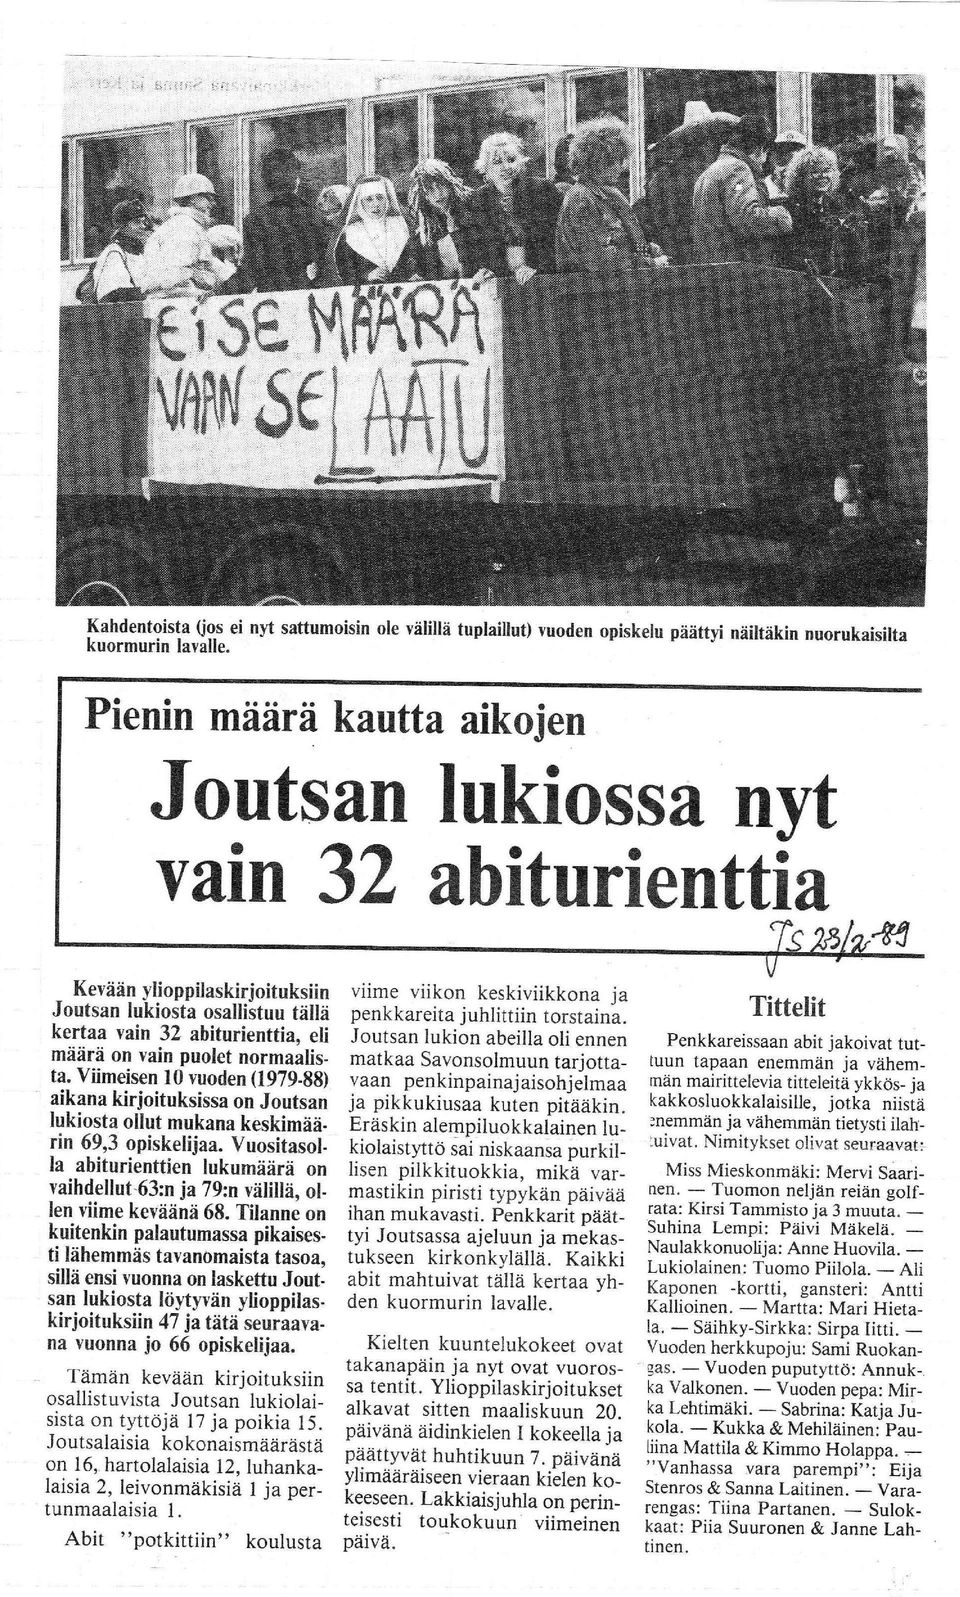 normaalista. Viimeisen 10 vuoden (197988) aikana kirjoituksissa on Joutsan lukiosta ollut mukana keskimaarin 69,3 opiskelijaa.